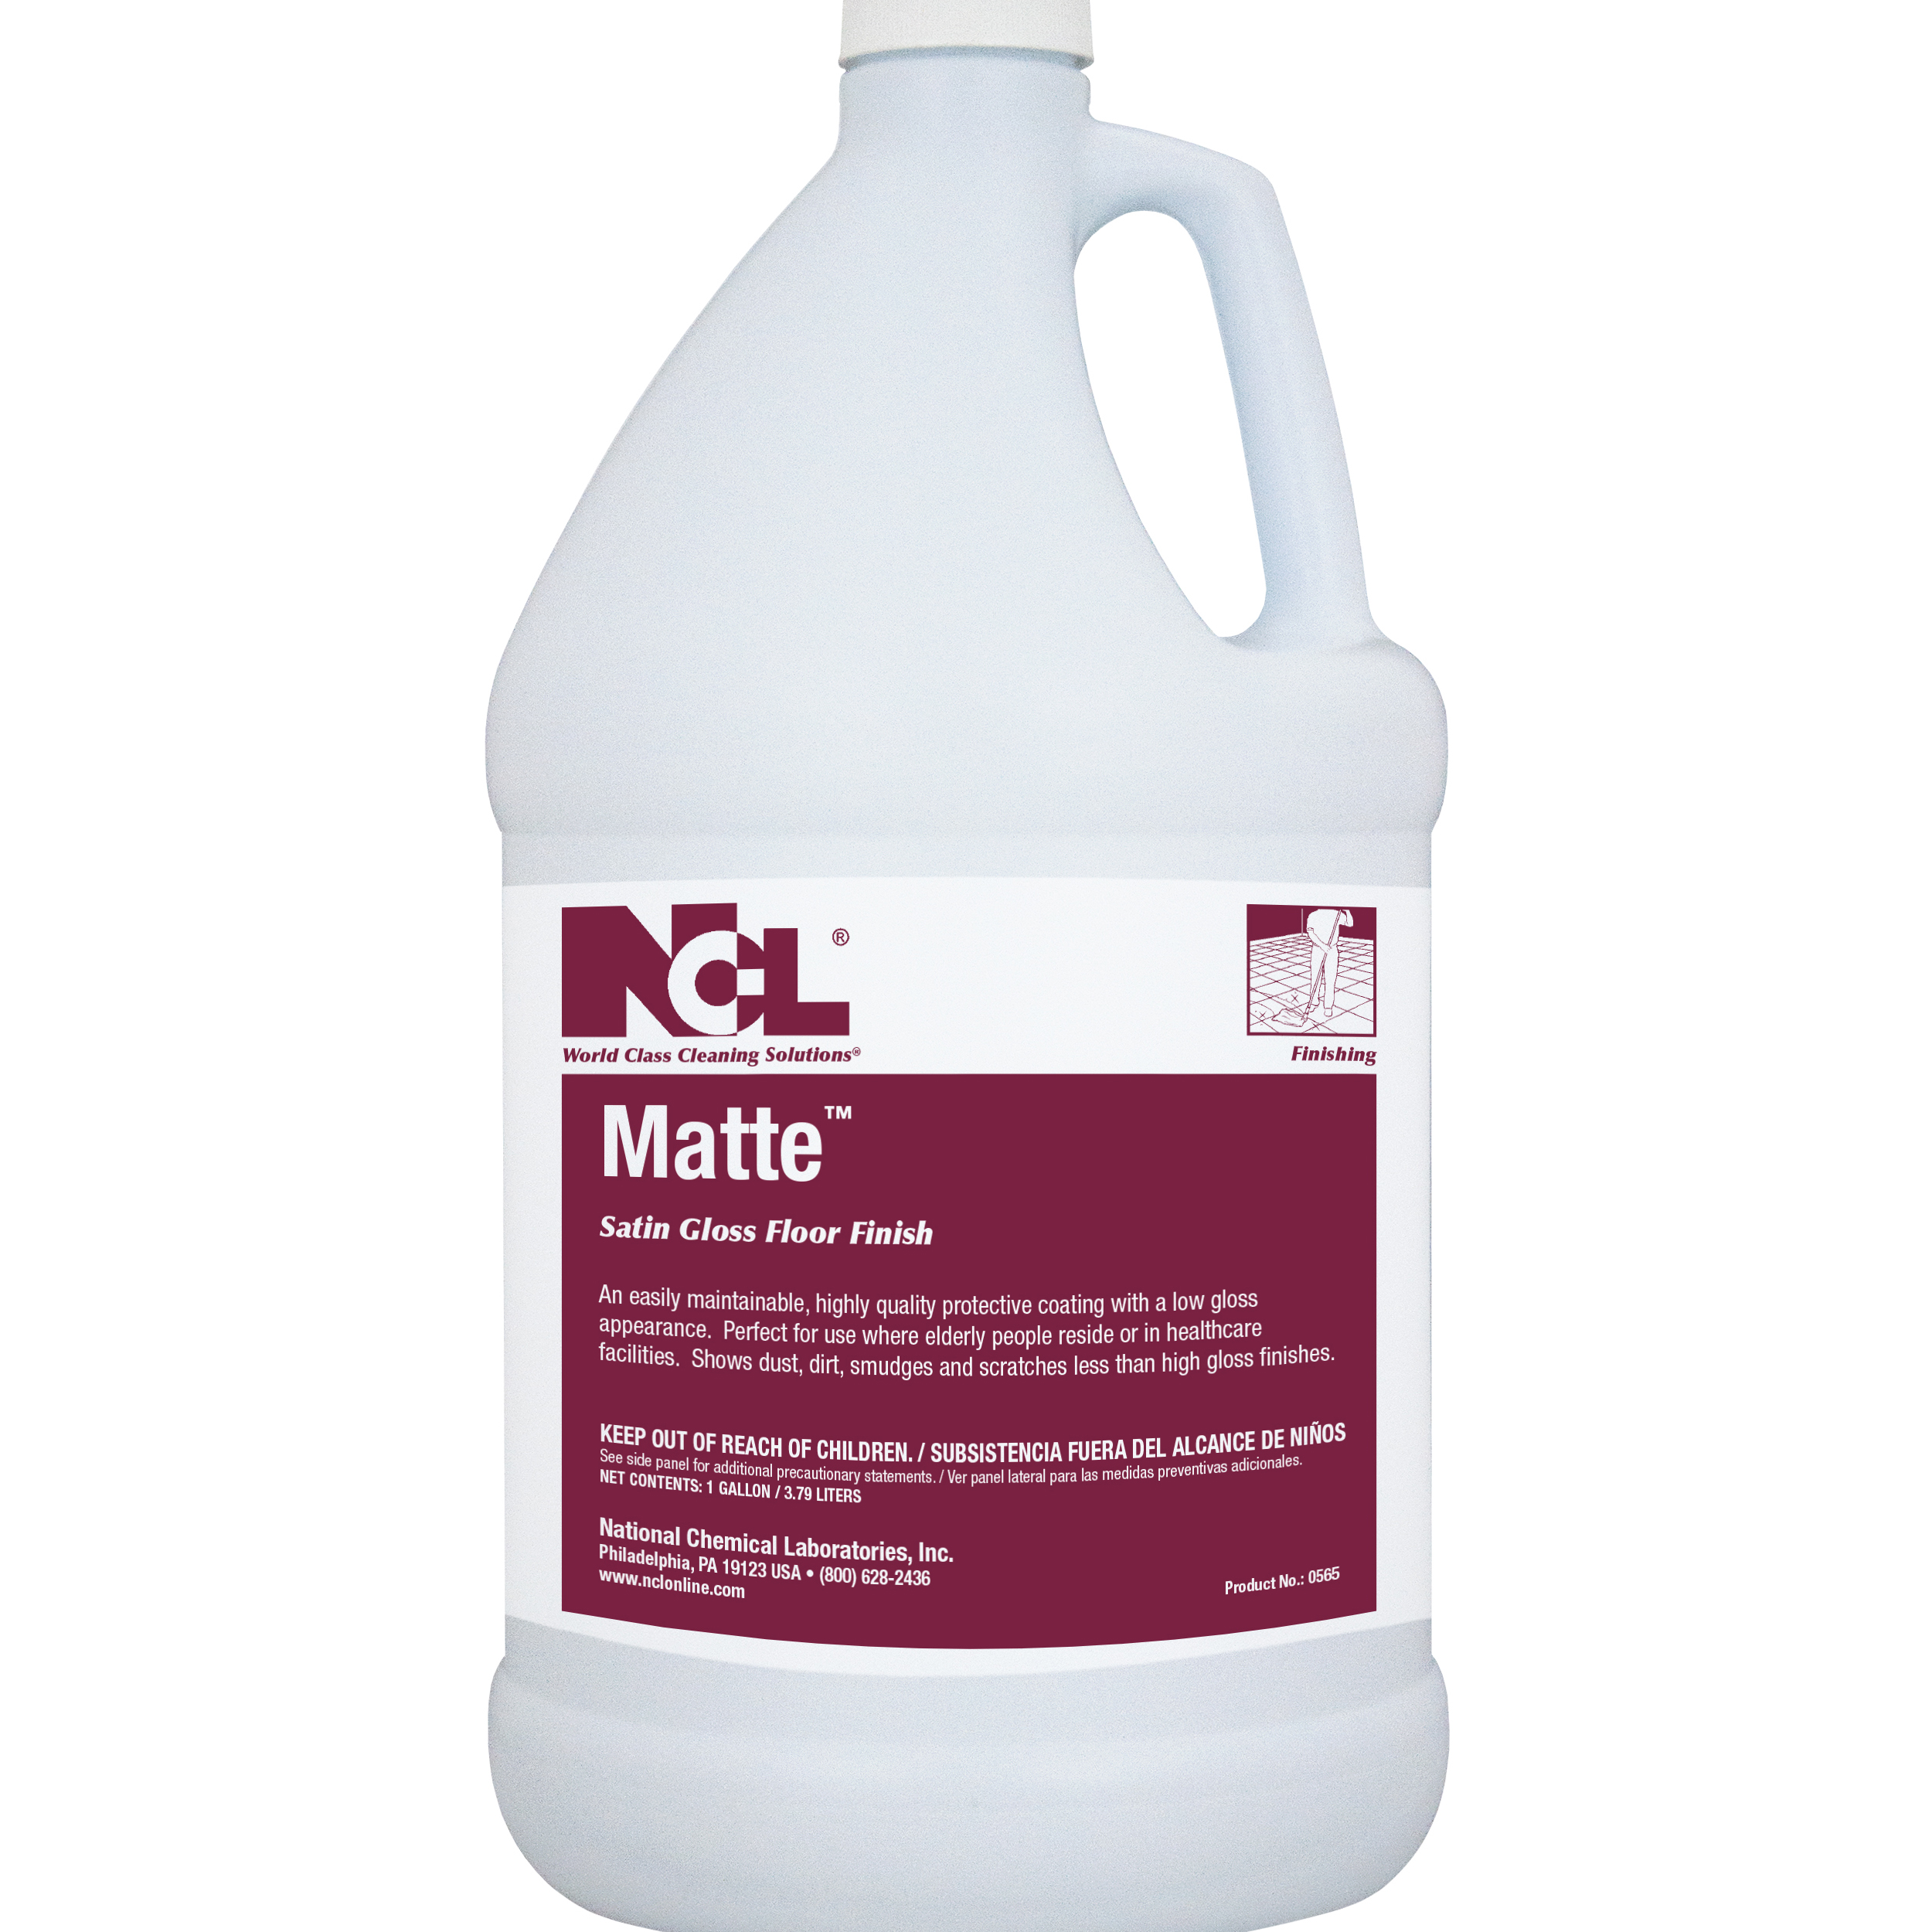  MATTE Satin Gloss Floor Finish 4/1 Gal. Case (NCL0585-29) 